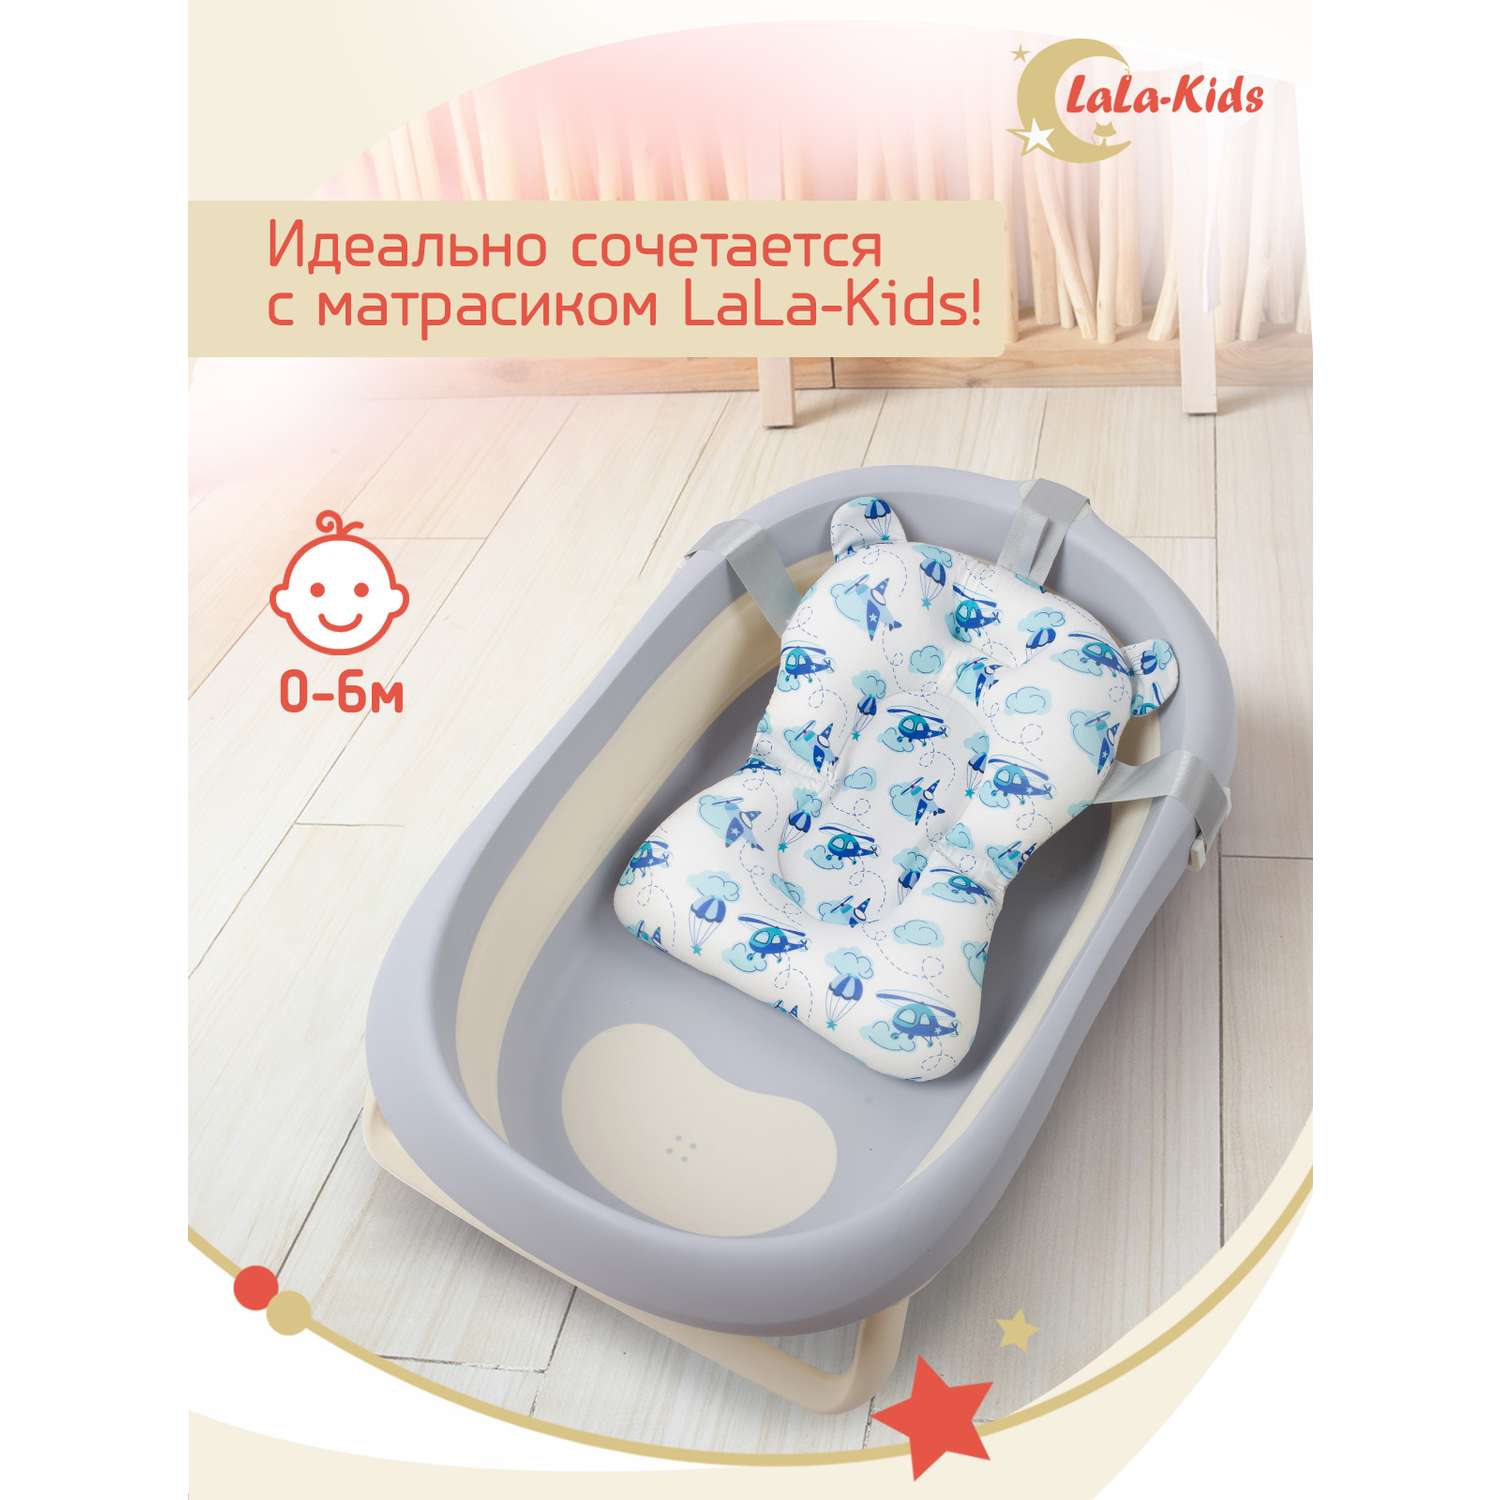 Складная ванночка LaLa-Kids для купания новорожденных - фото 11